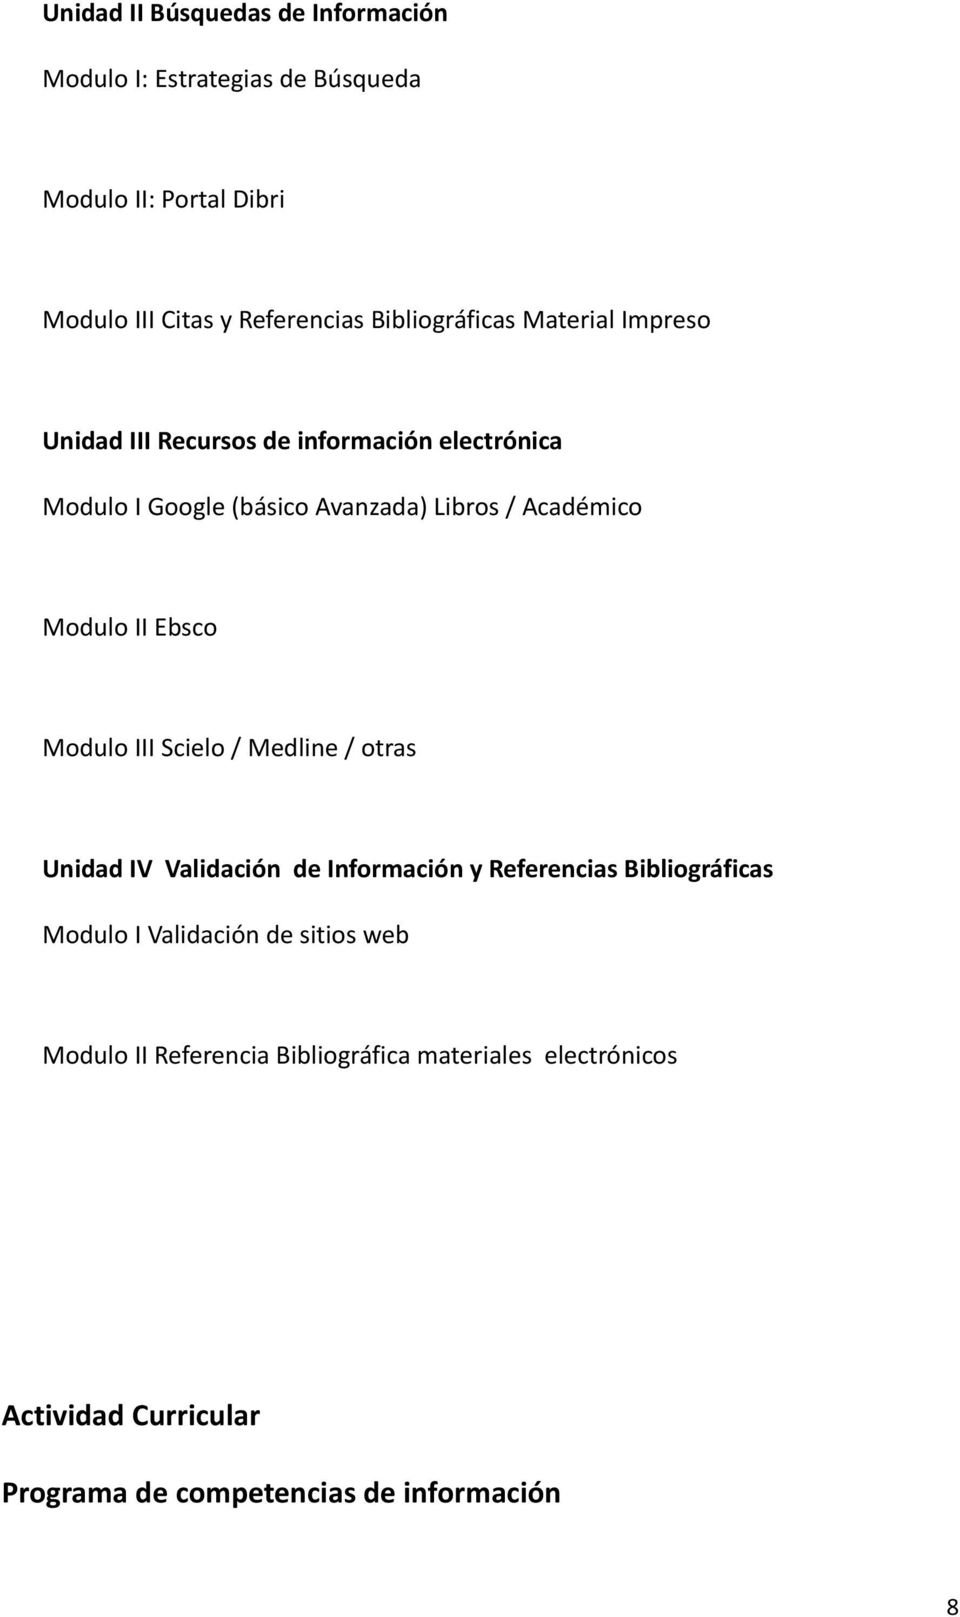 Modulo II Ebsco Modulo III Scielo / Medline / otras Unidad IV Validación de Información y Referencias Bibliográficas Modulo I